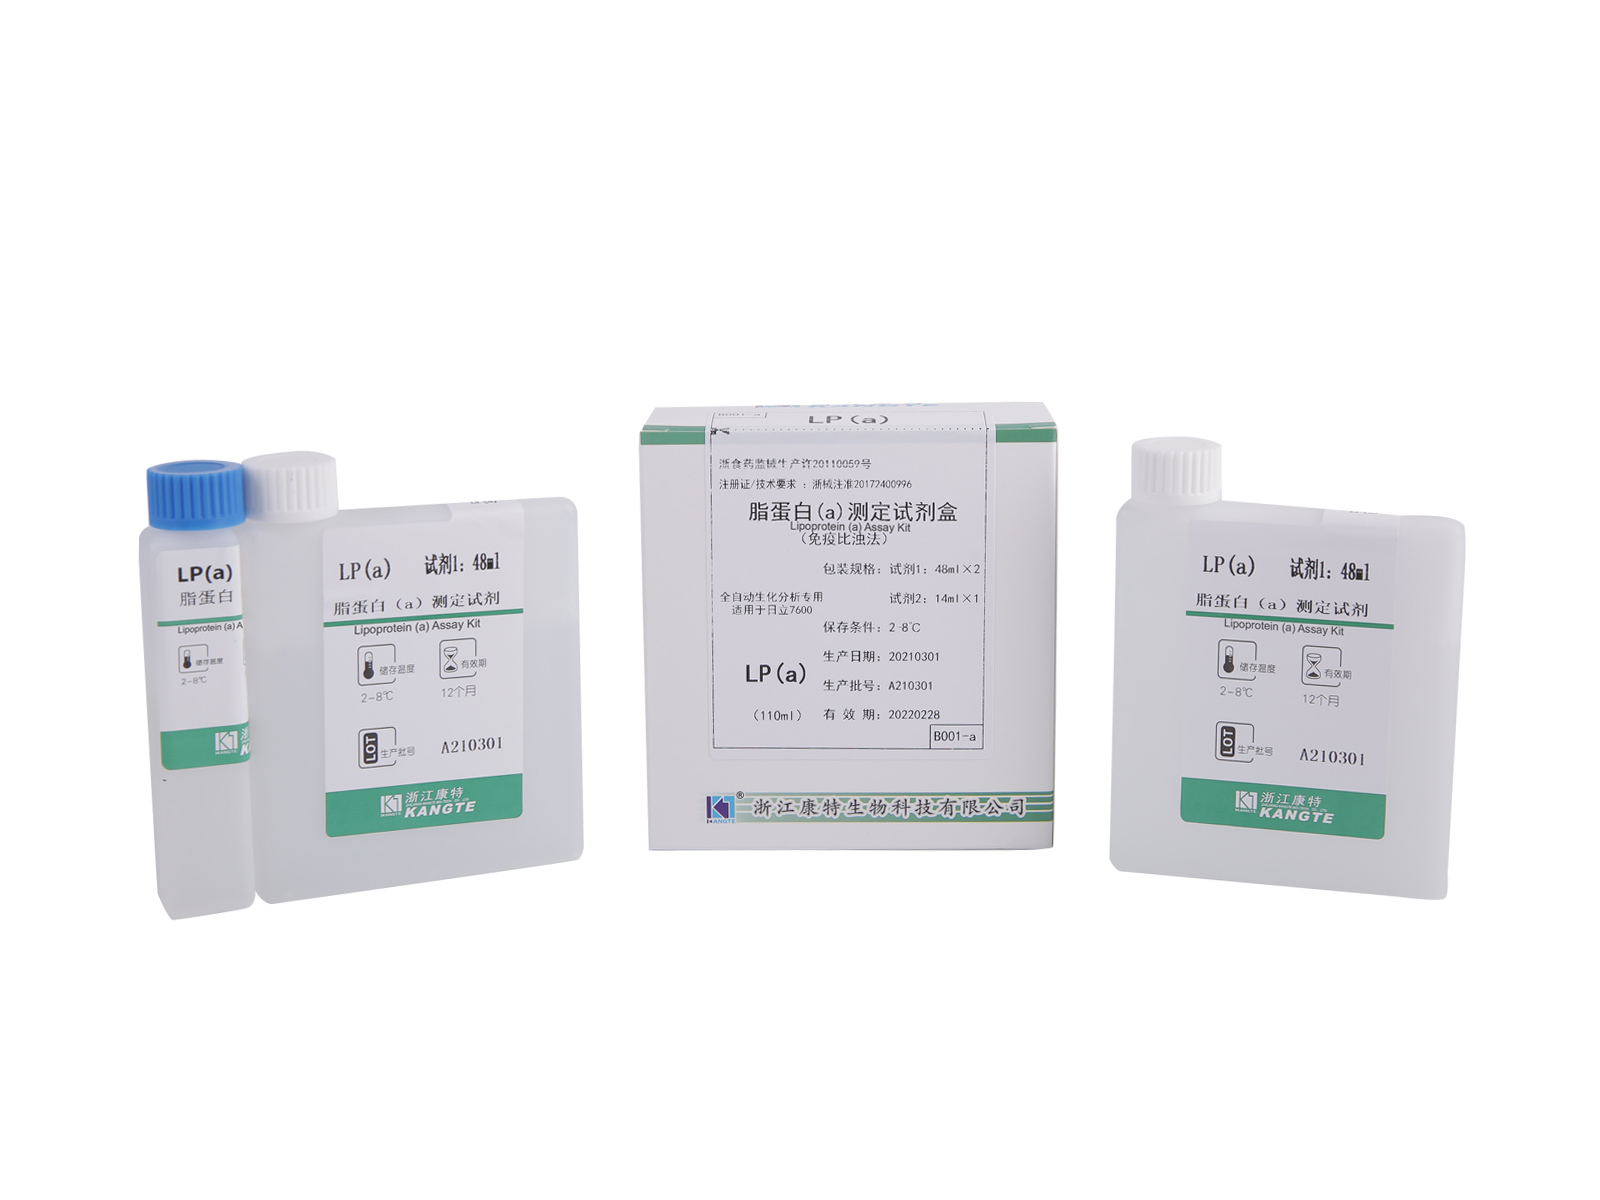 【LP(a)】Kit de test de lipoprotéine (a) (méthode immunoturbidimétrique améliorée au latex)